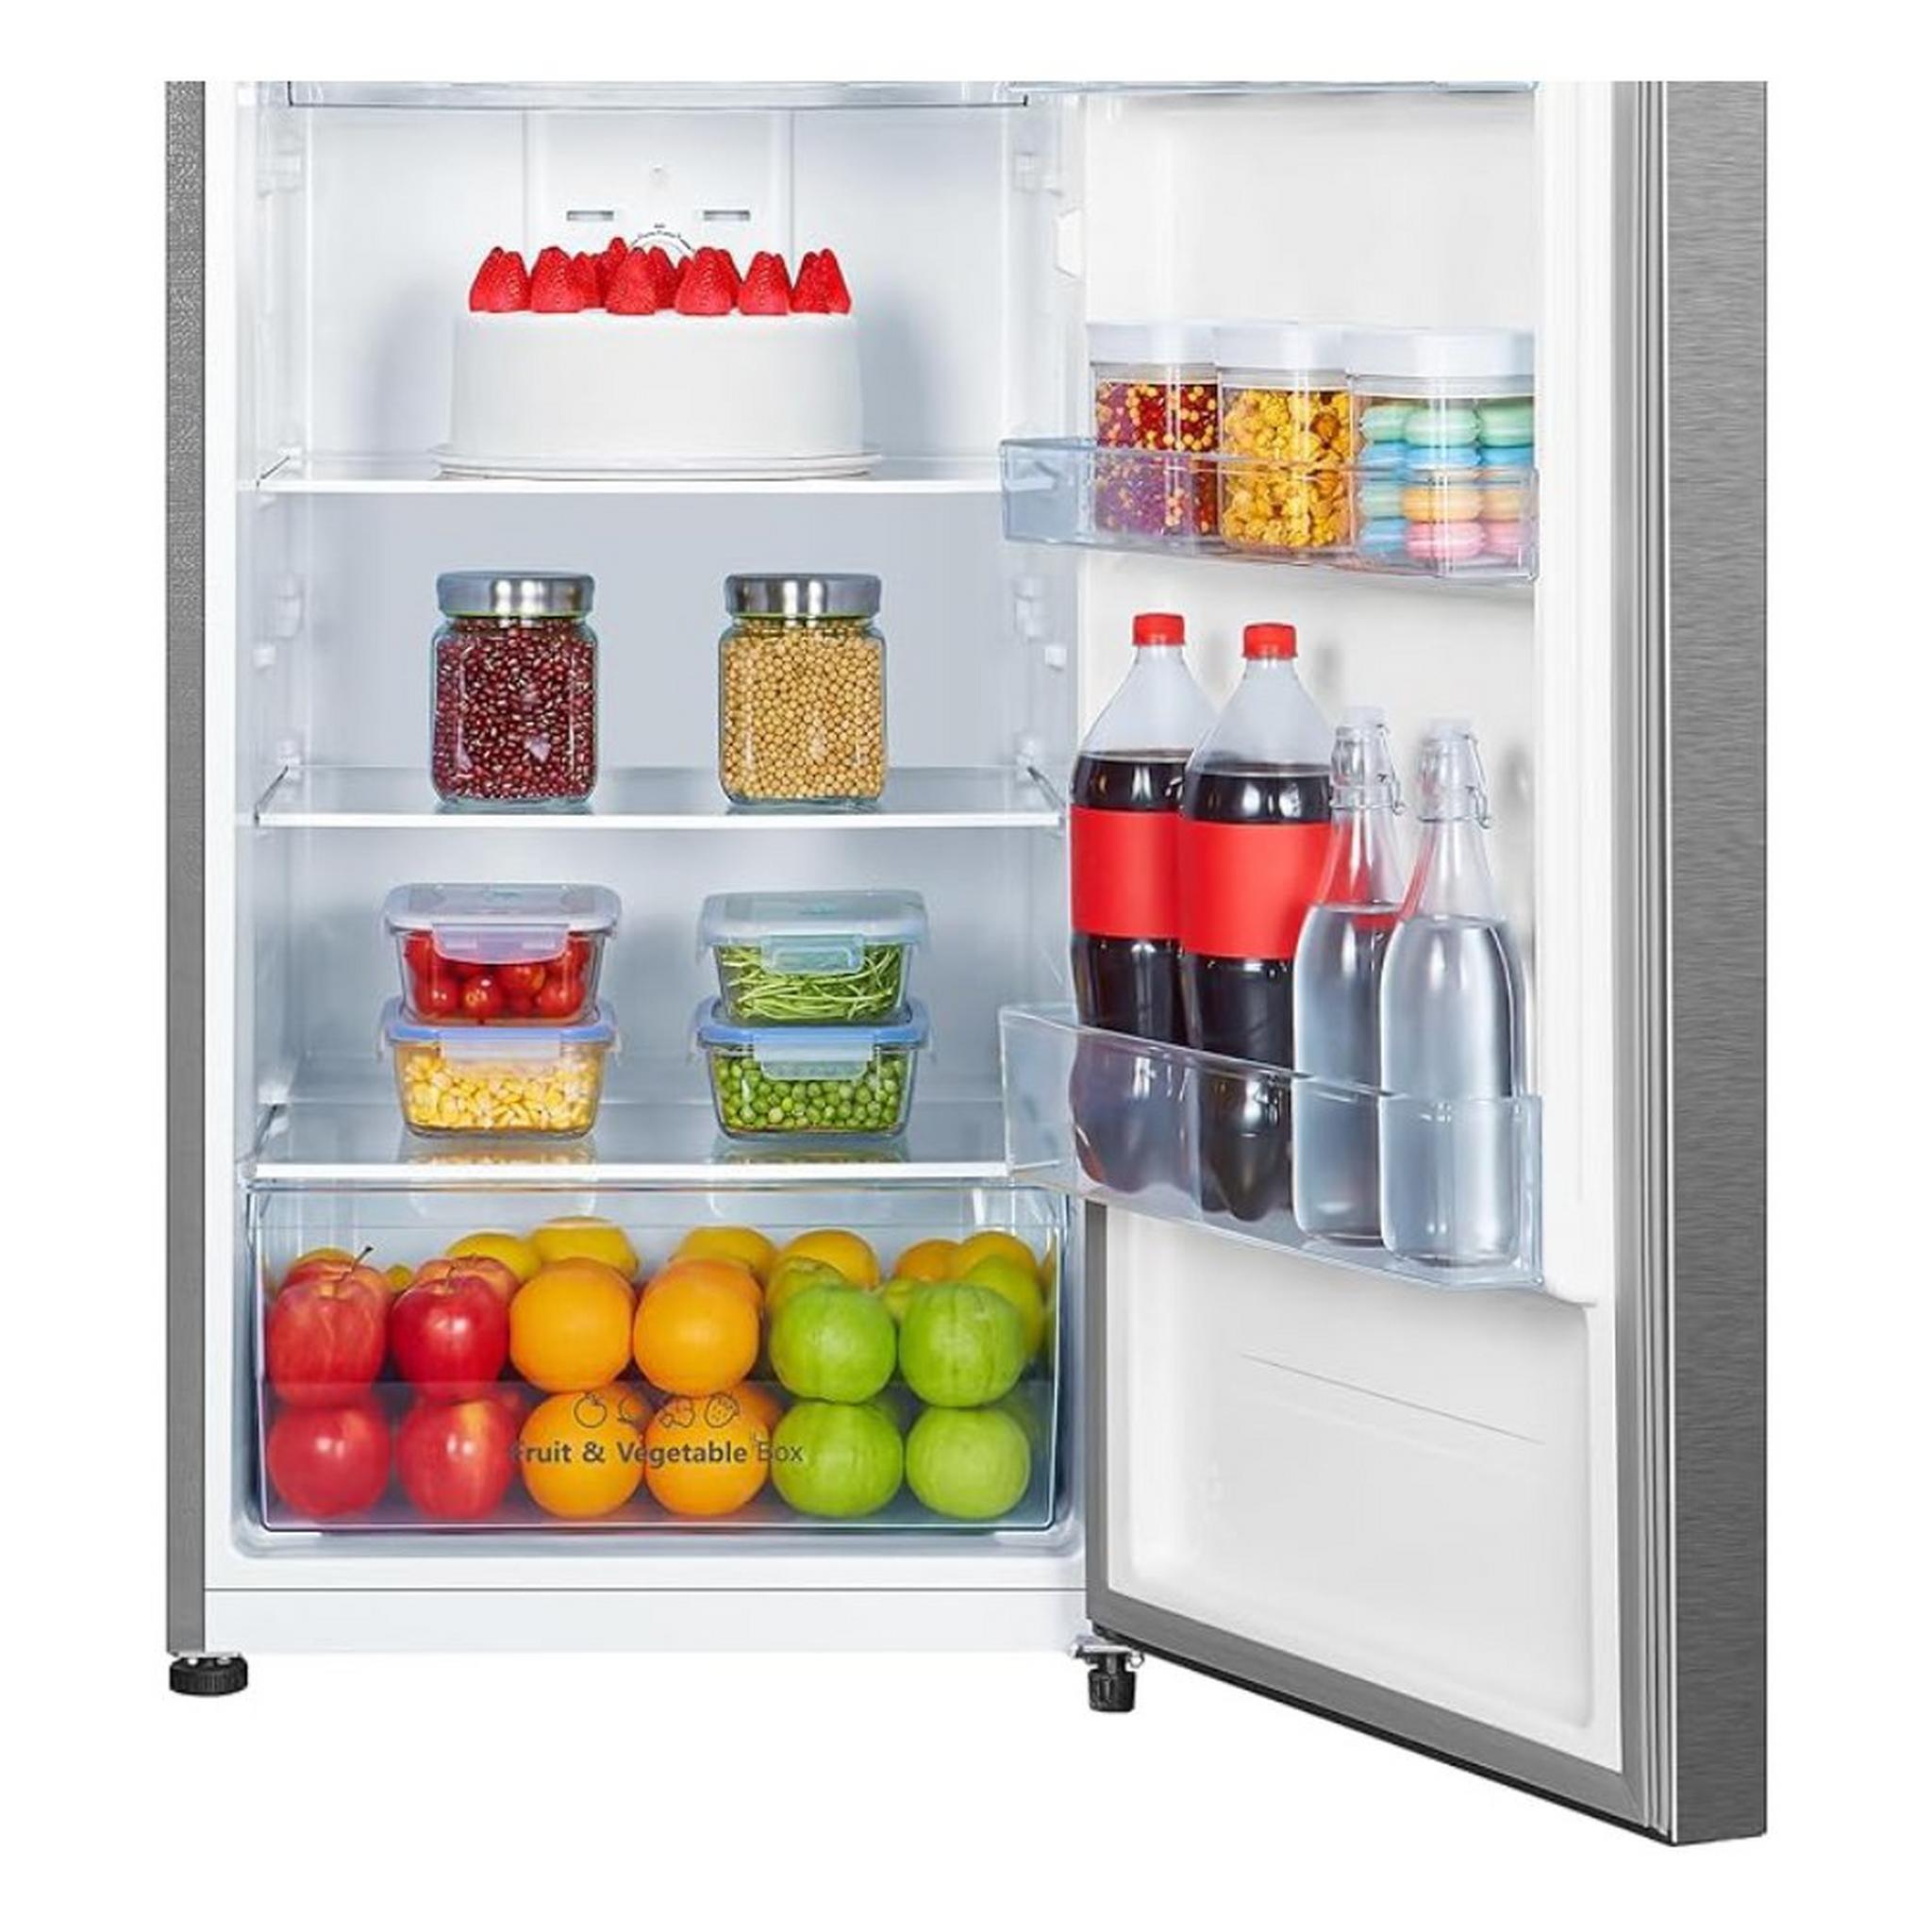 Hisense Top Mount Refrigerator, 14.7 GFT, 418 Liters, RT418N4ASU – Silver